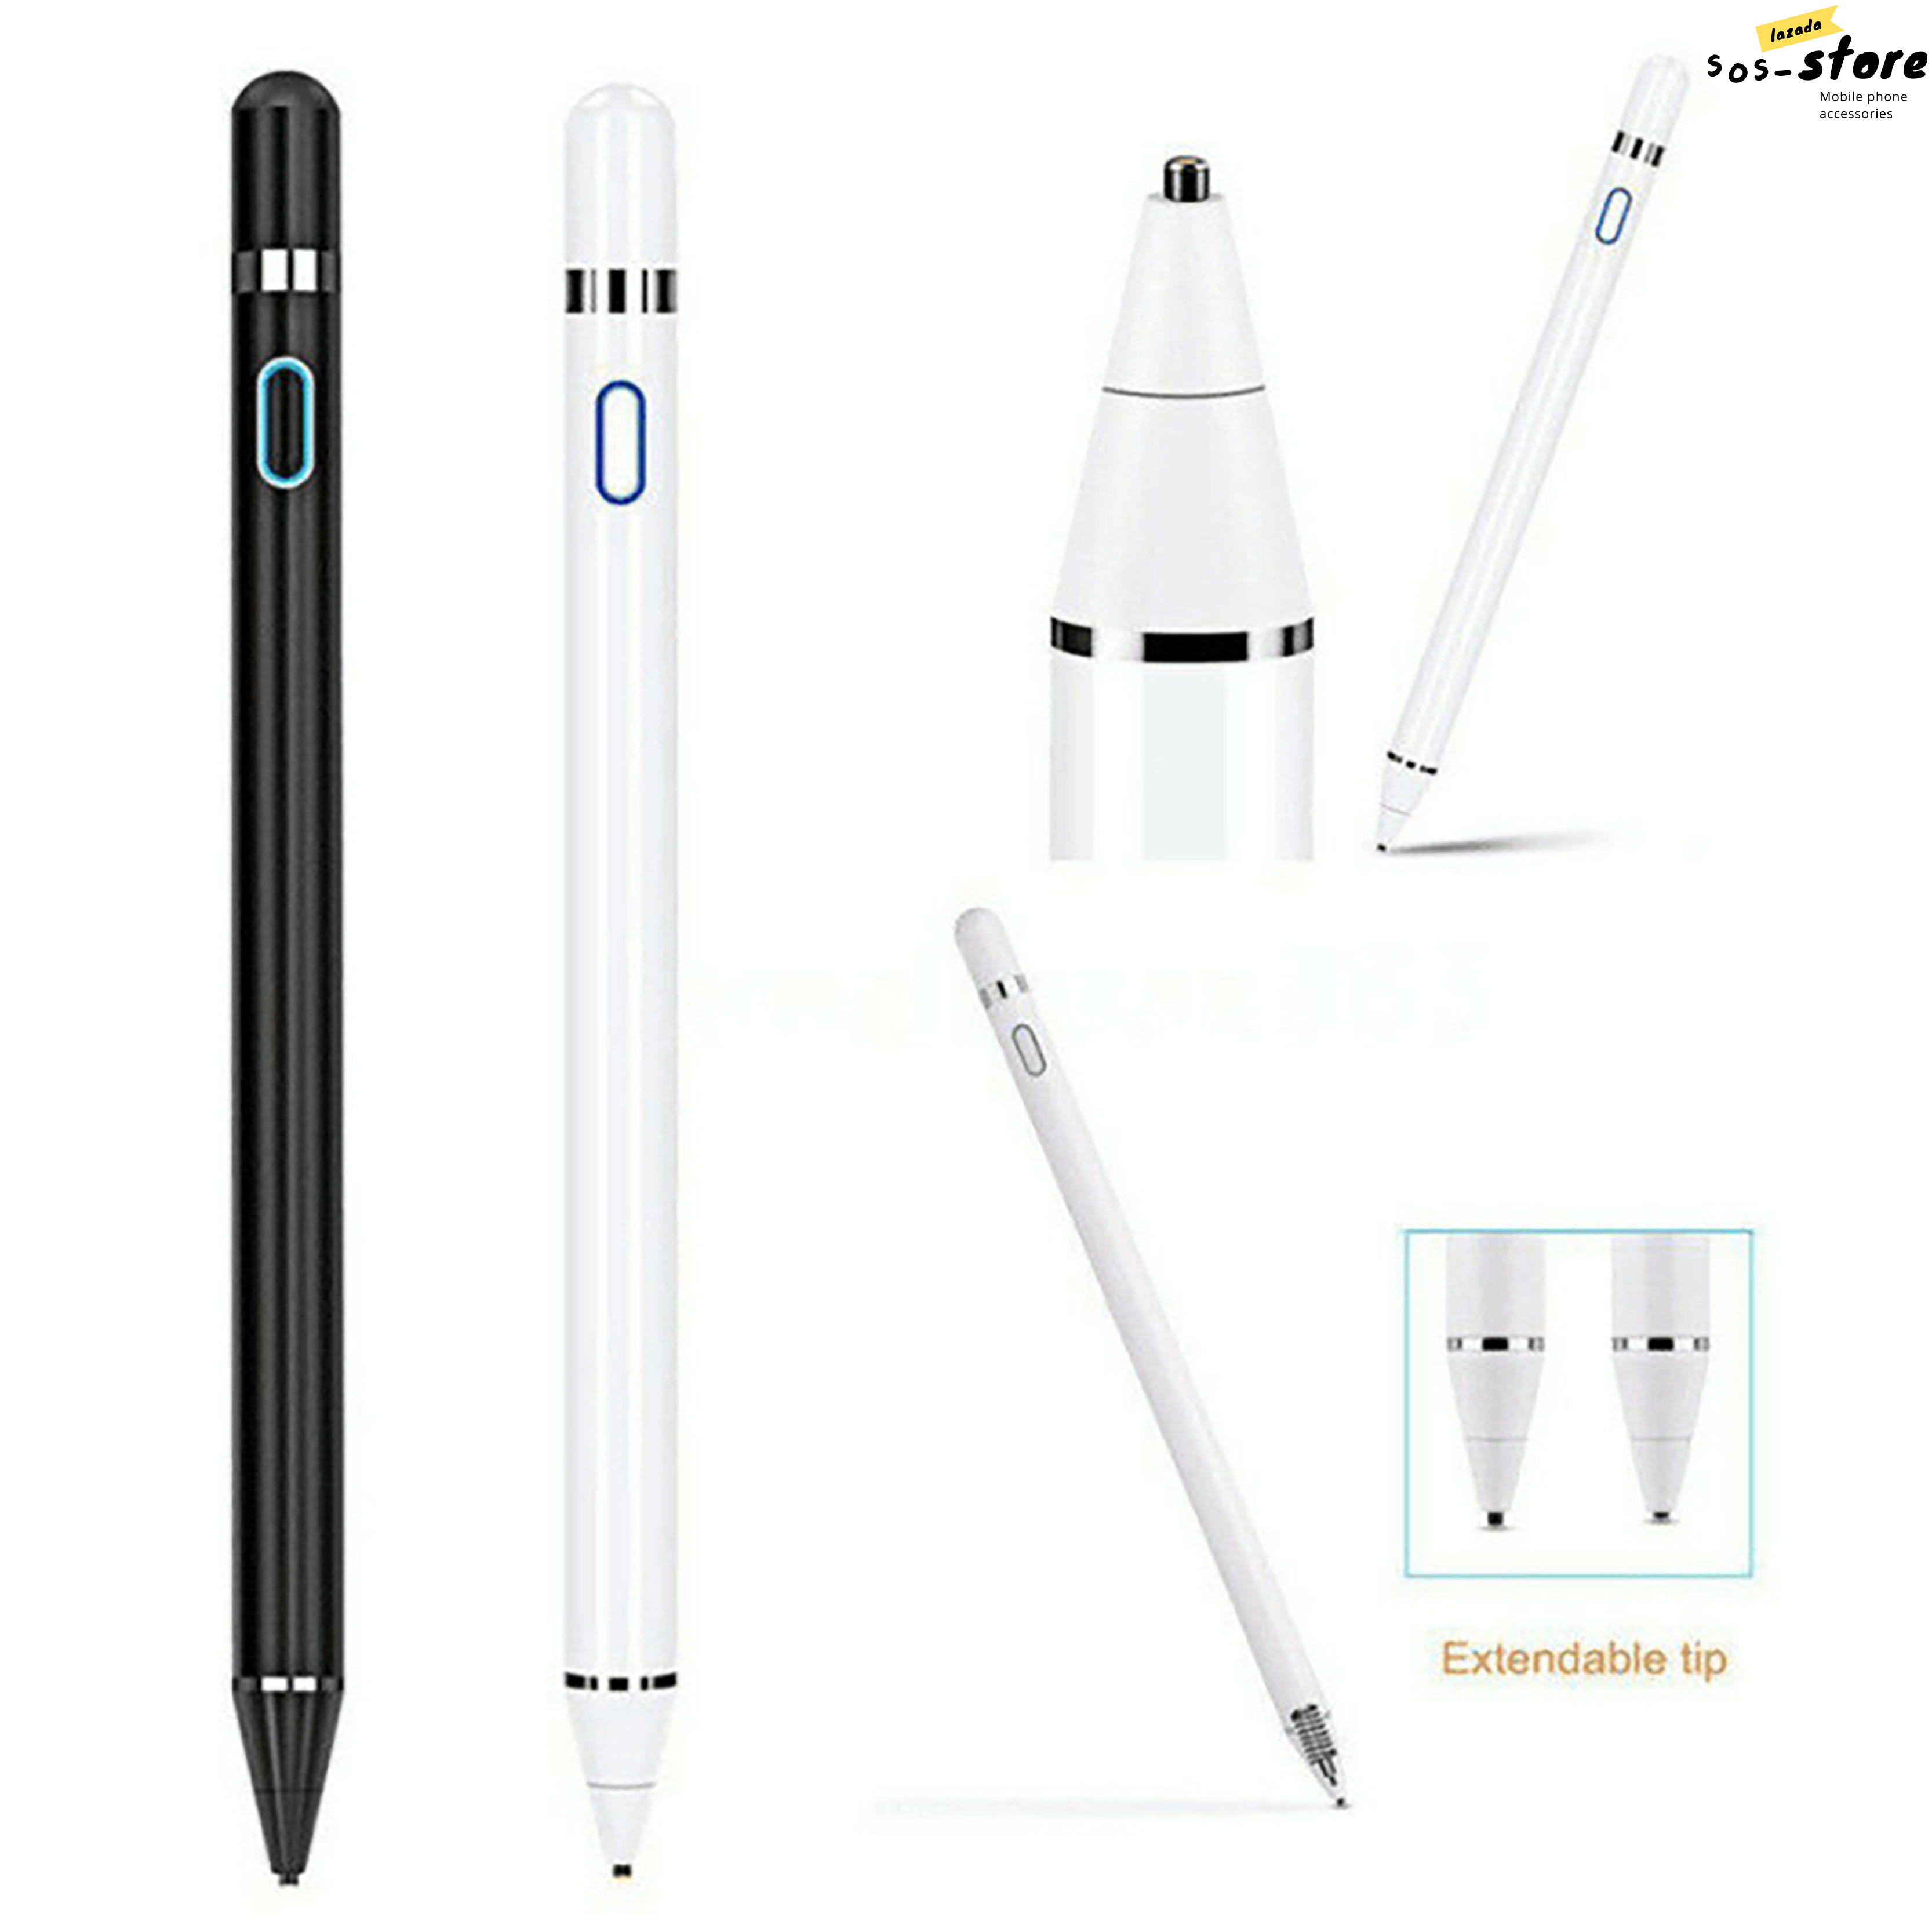 ปากกาไอแพด Capacitive ปากกาสไตลัส ปากกาทัชสกรีน ปากกาเขียนหน้าจอ for Apple Pencil iPad 9.7 นิ้ว 2018 มินิ 1 2 3 4 Pro Air VIVO OPPO,Samsung,Huawei,Xiaomi Huawei หรือแท็บเล็ตได้หมด